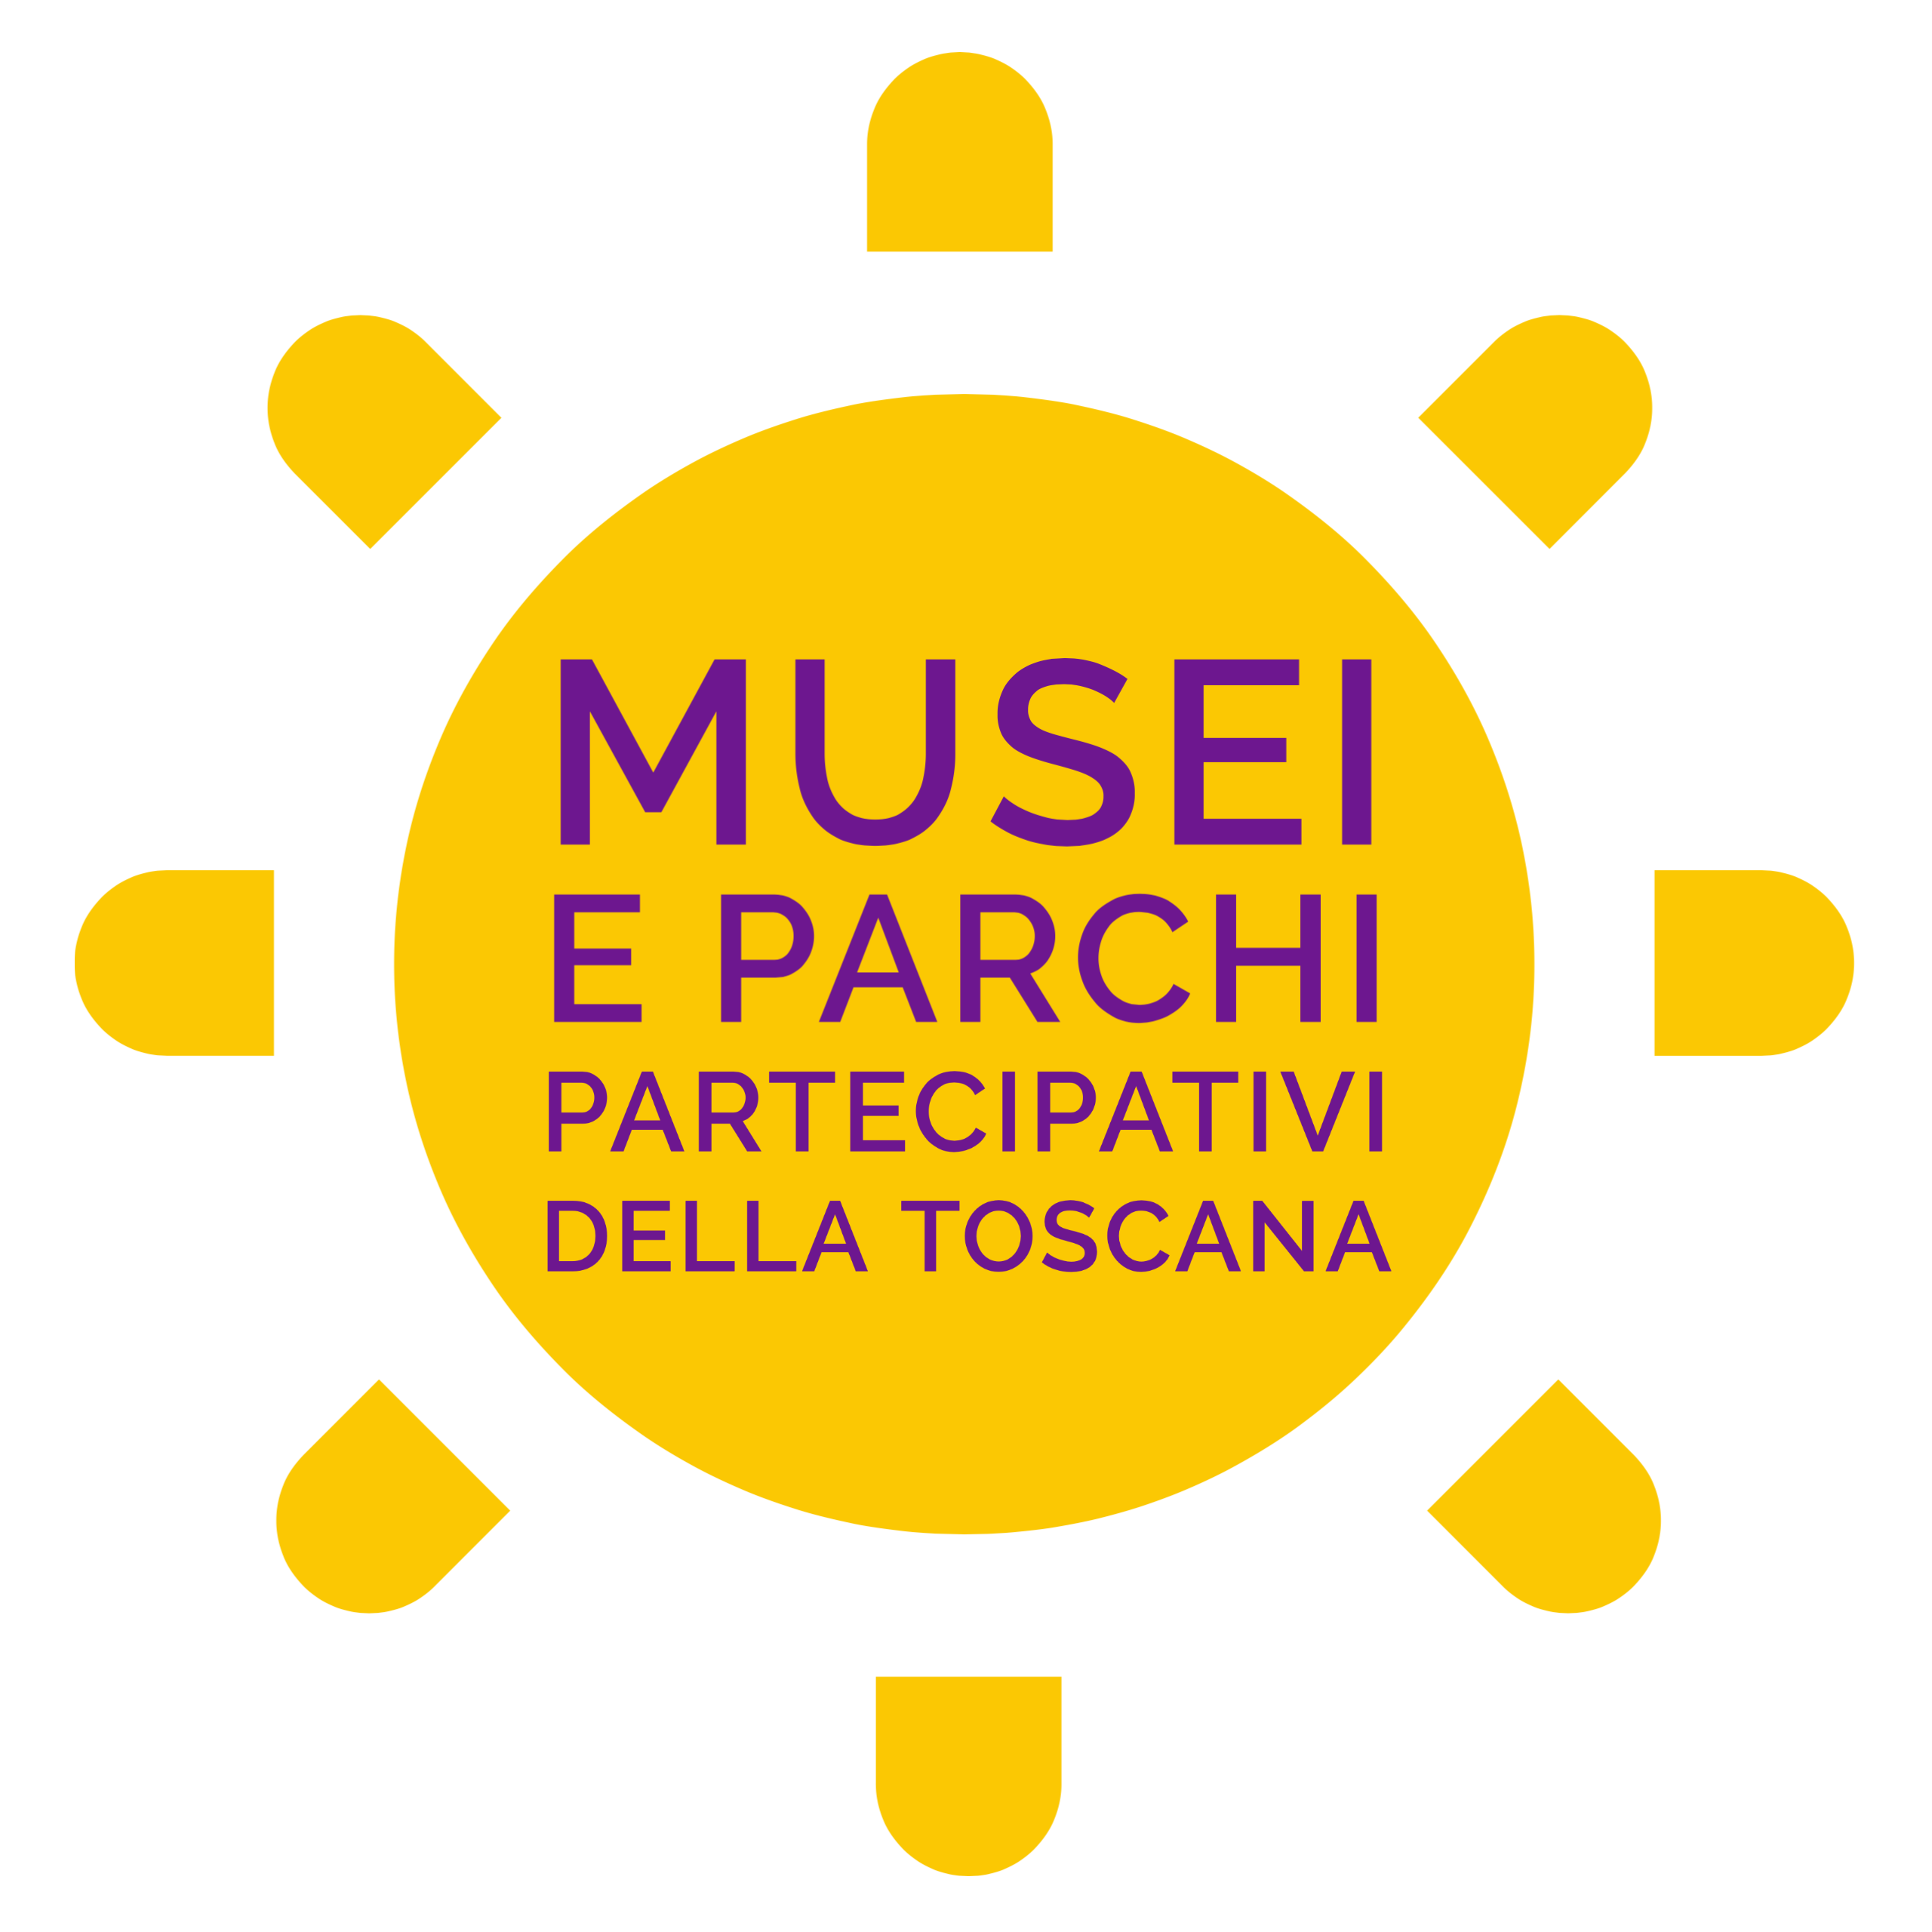 Musei e Parchi partecipativi della Toscana